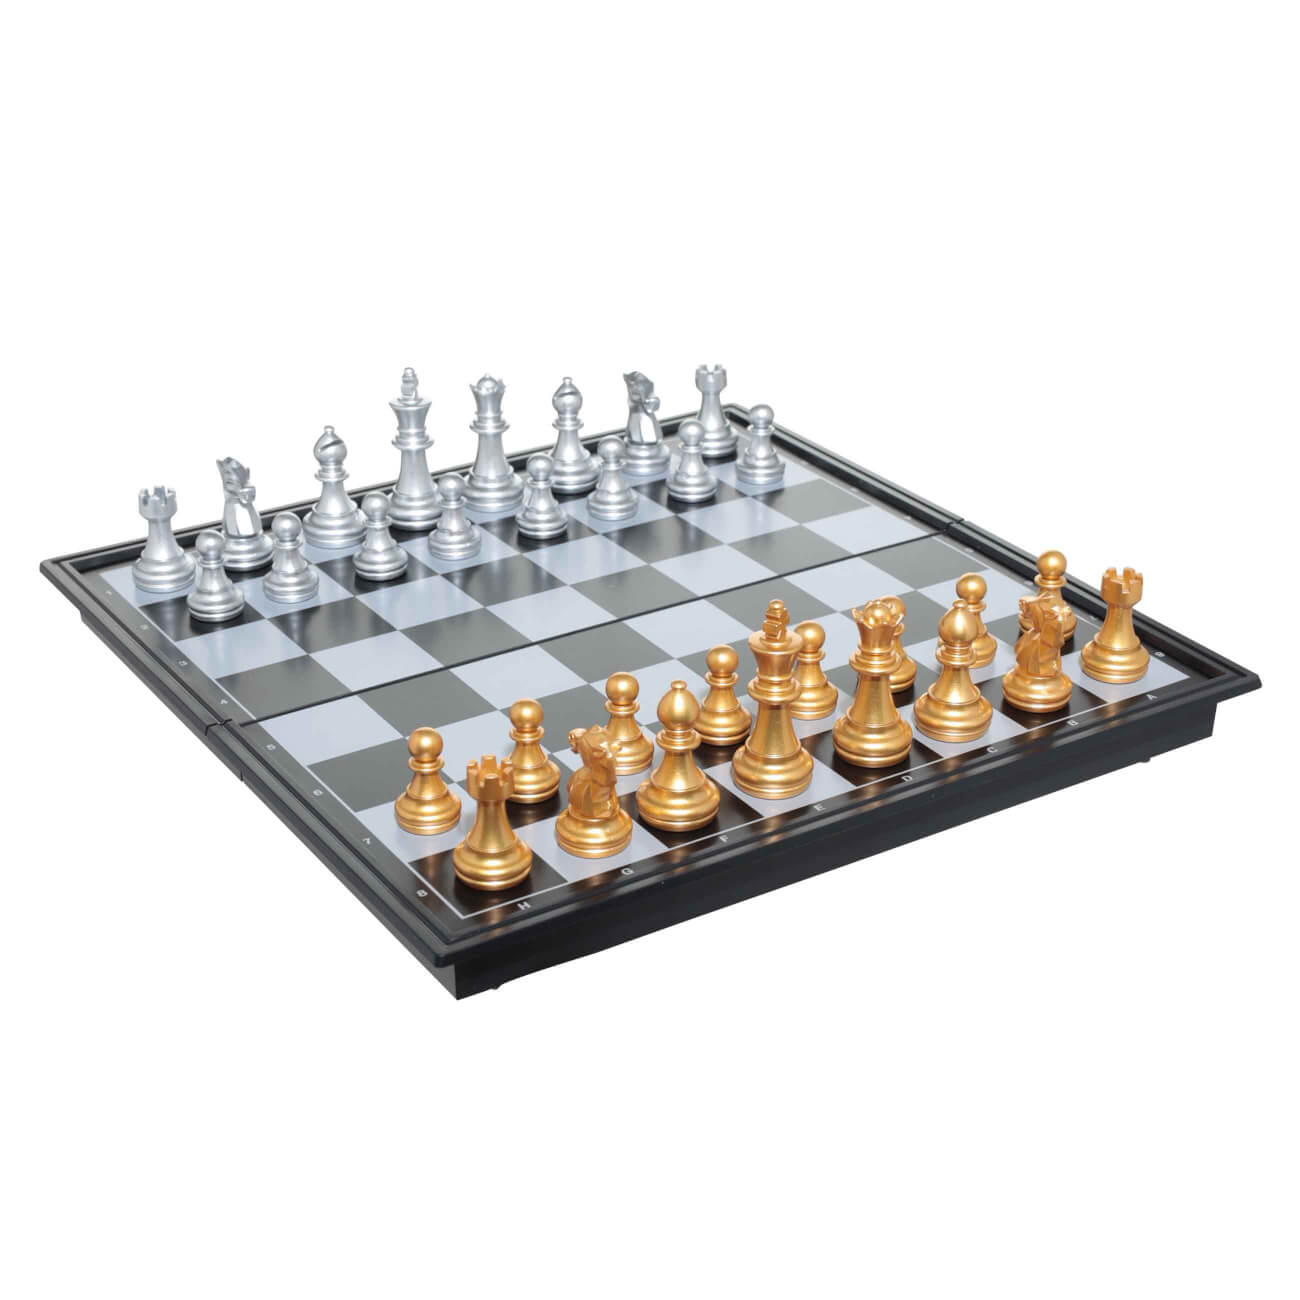 Игра настольная, 25х12 см, шахматы дорожные, пластик, Hobby light игра настольная 15х7 см шахматы дорожные дерево hobby